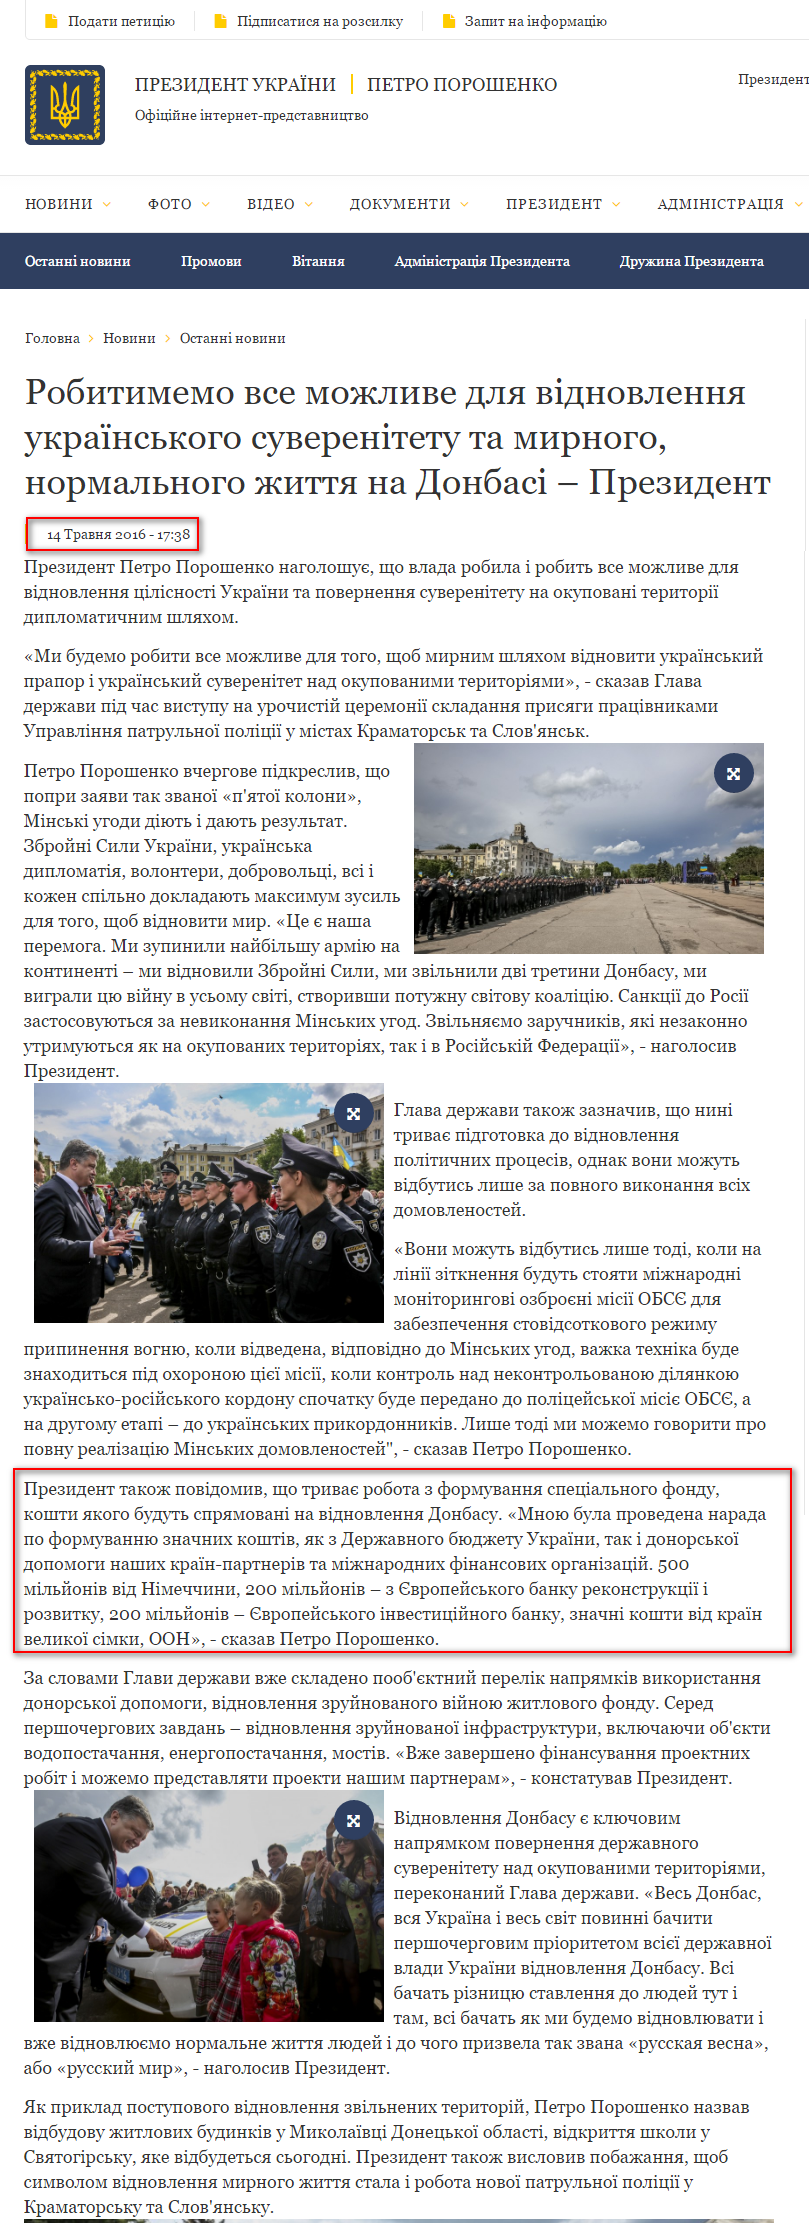 http://www.president.gov.ua/news/robitimemo-vse-mozhlive-dlya-vidnovlennya-ukrayinskogo-suver-37102